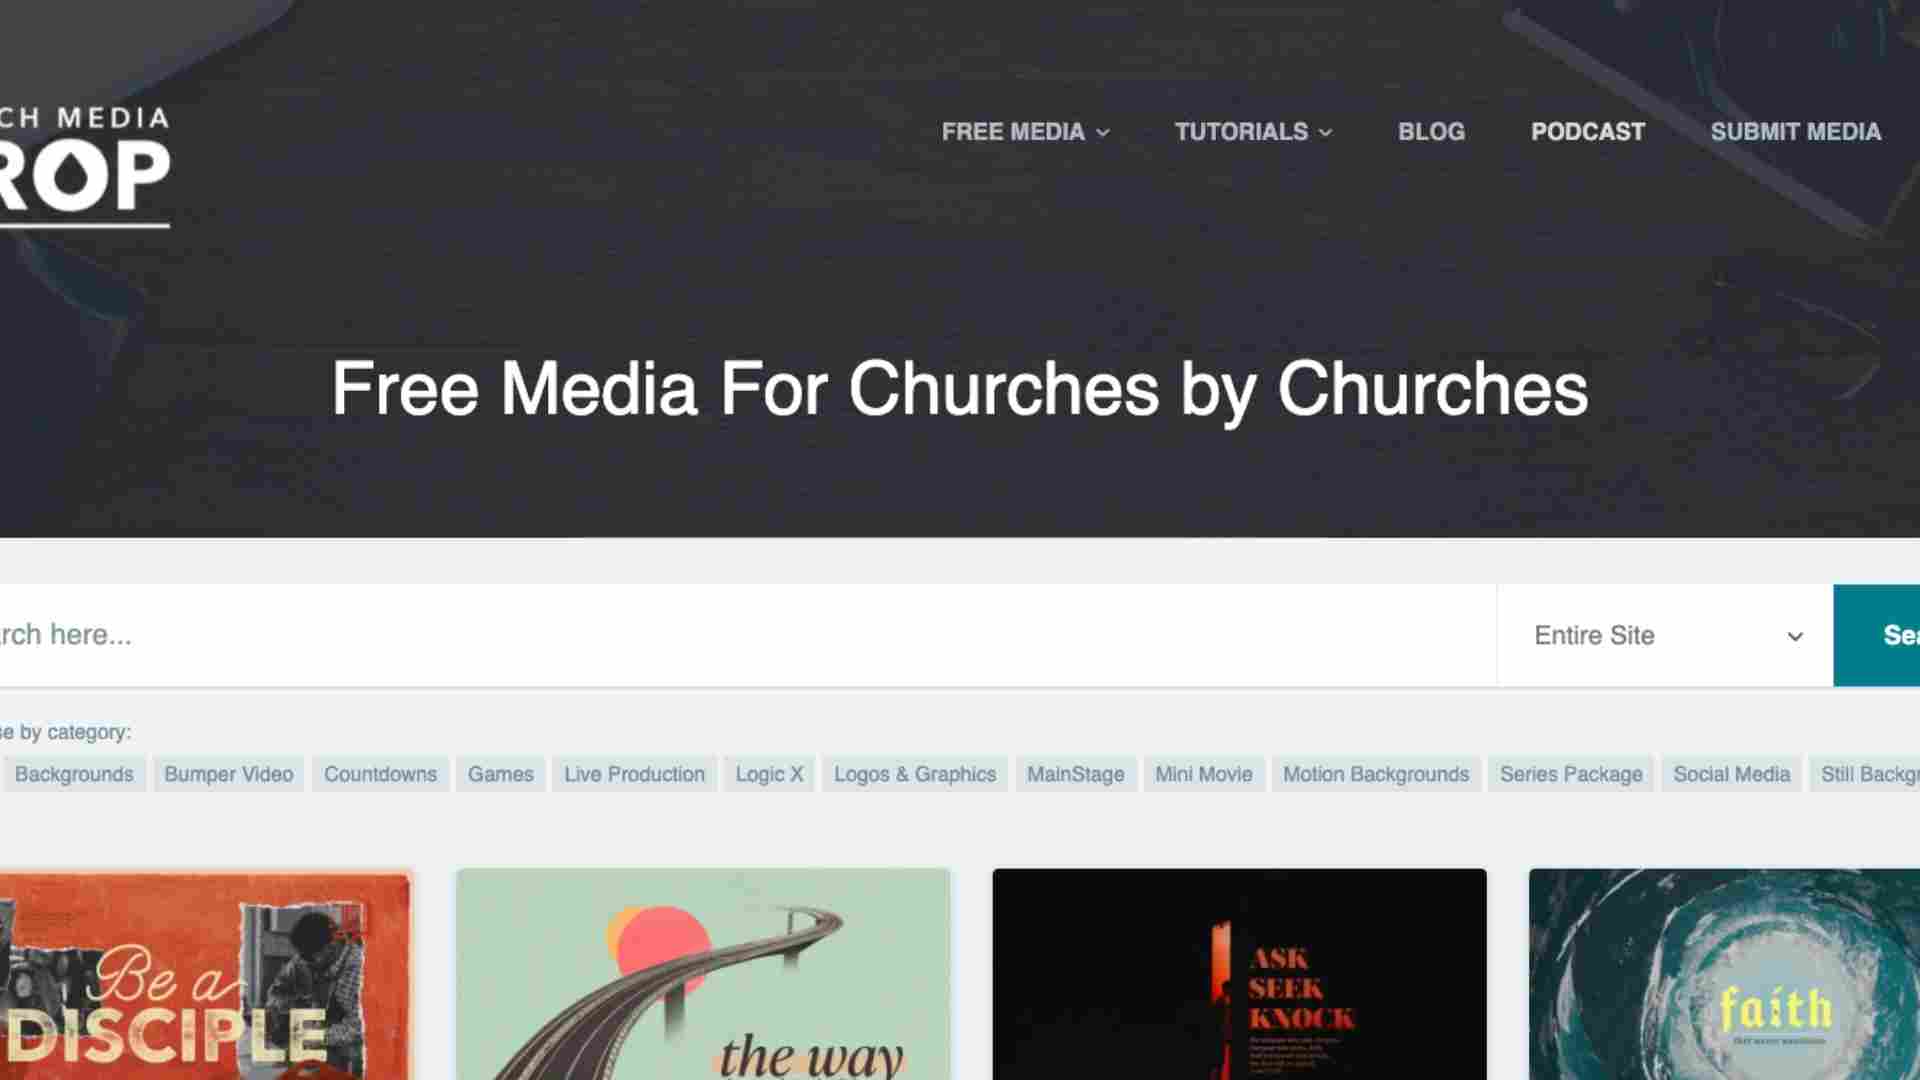 Church Media Drop